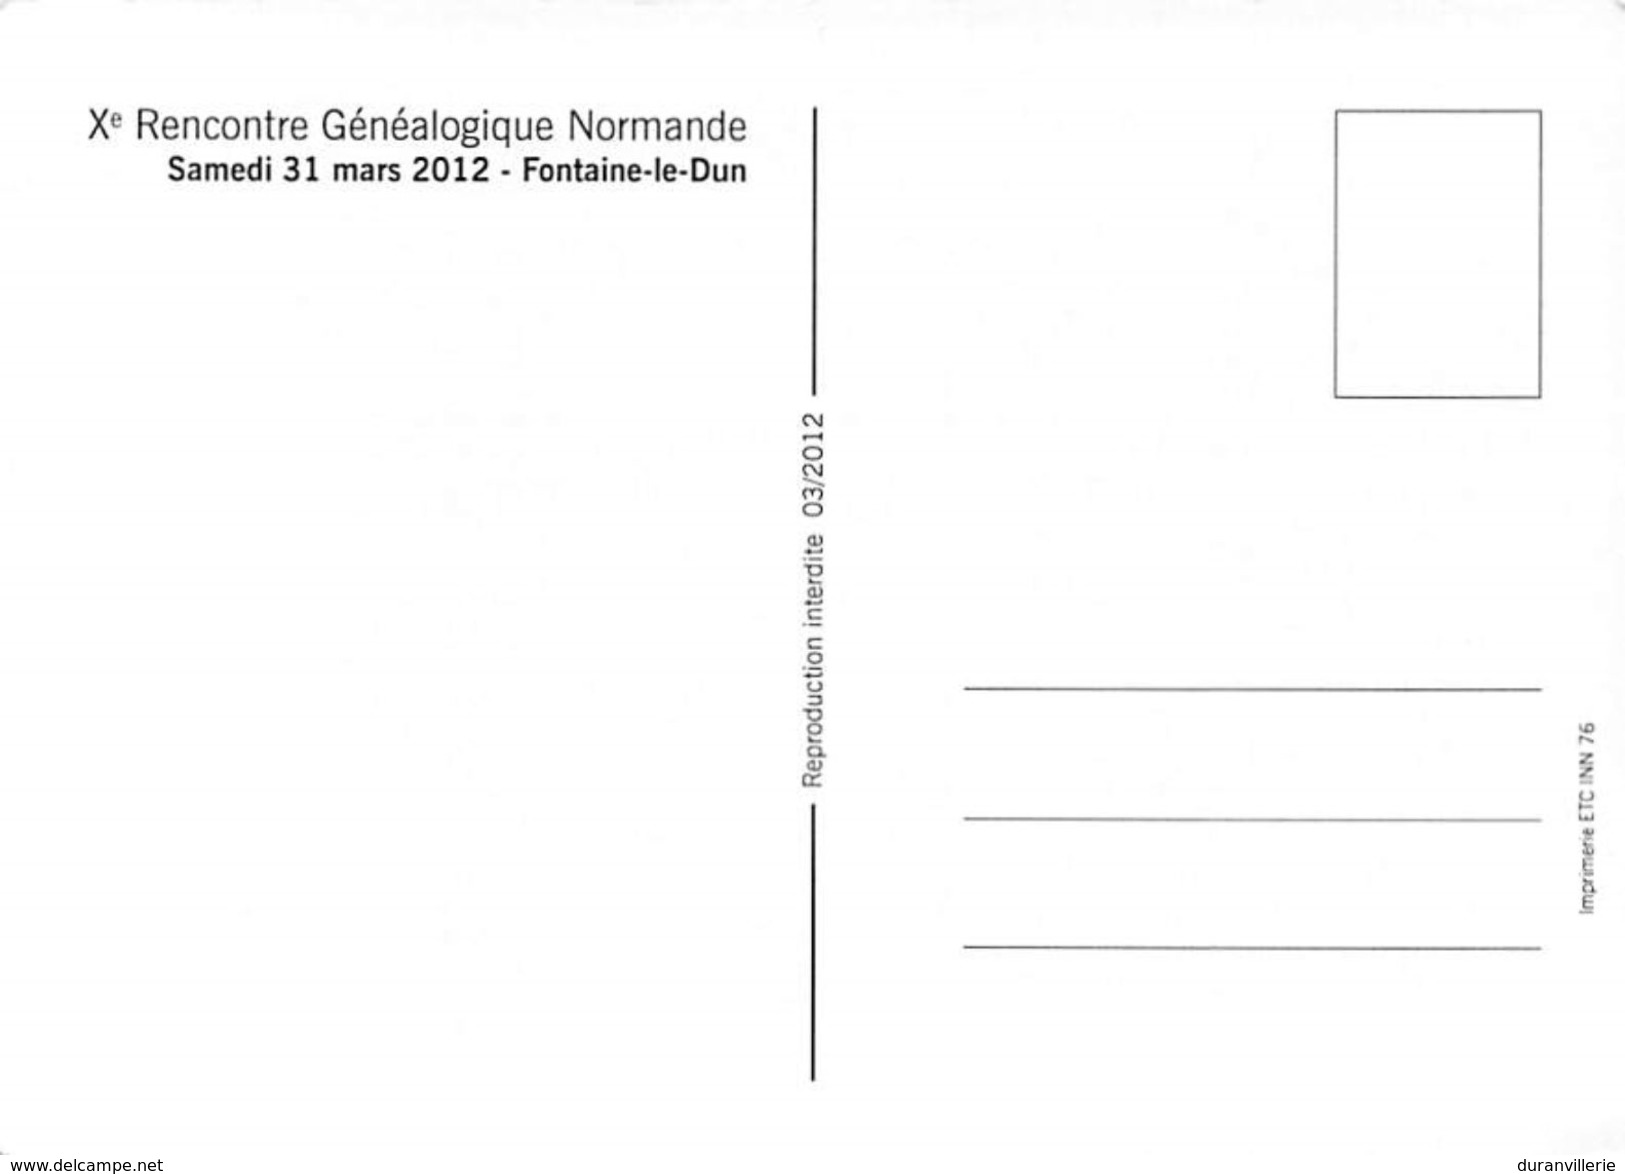 76 - FONTAINE Le DUN - Xè Rencontre Généalogique Normandie 2012 - Fontaine Le Dun